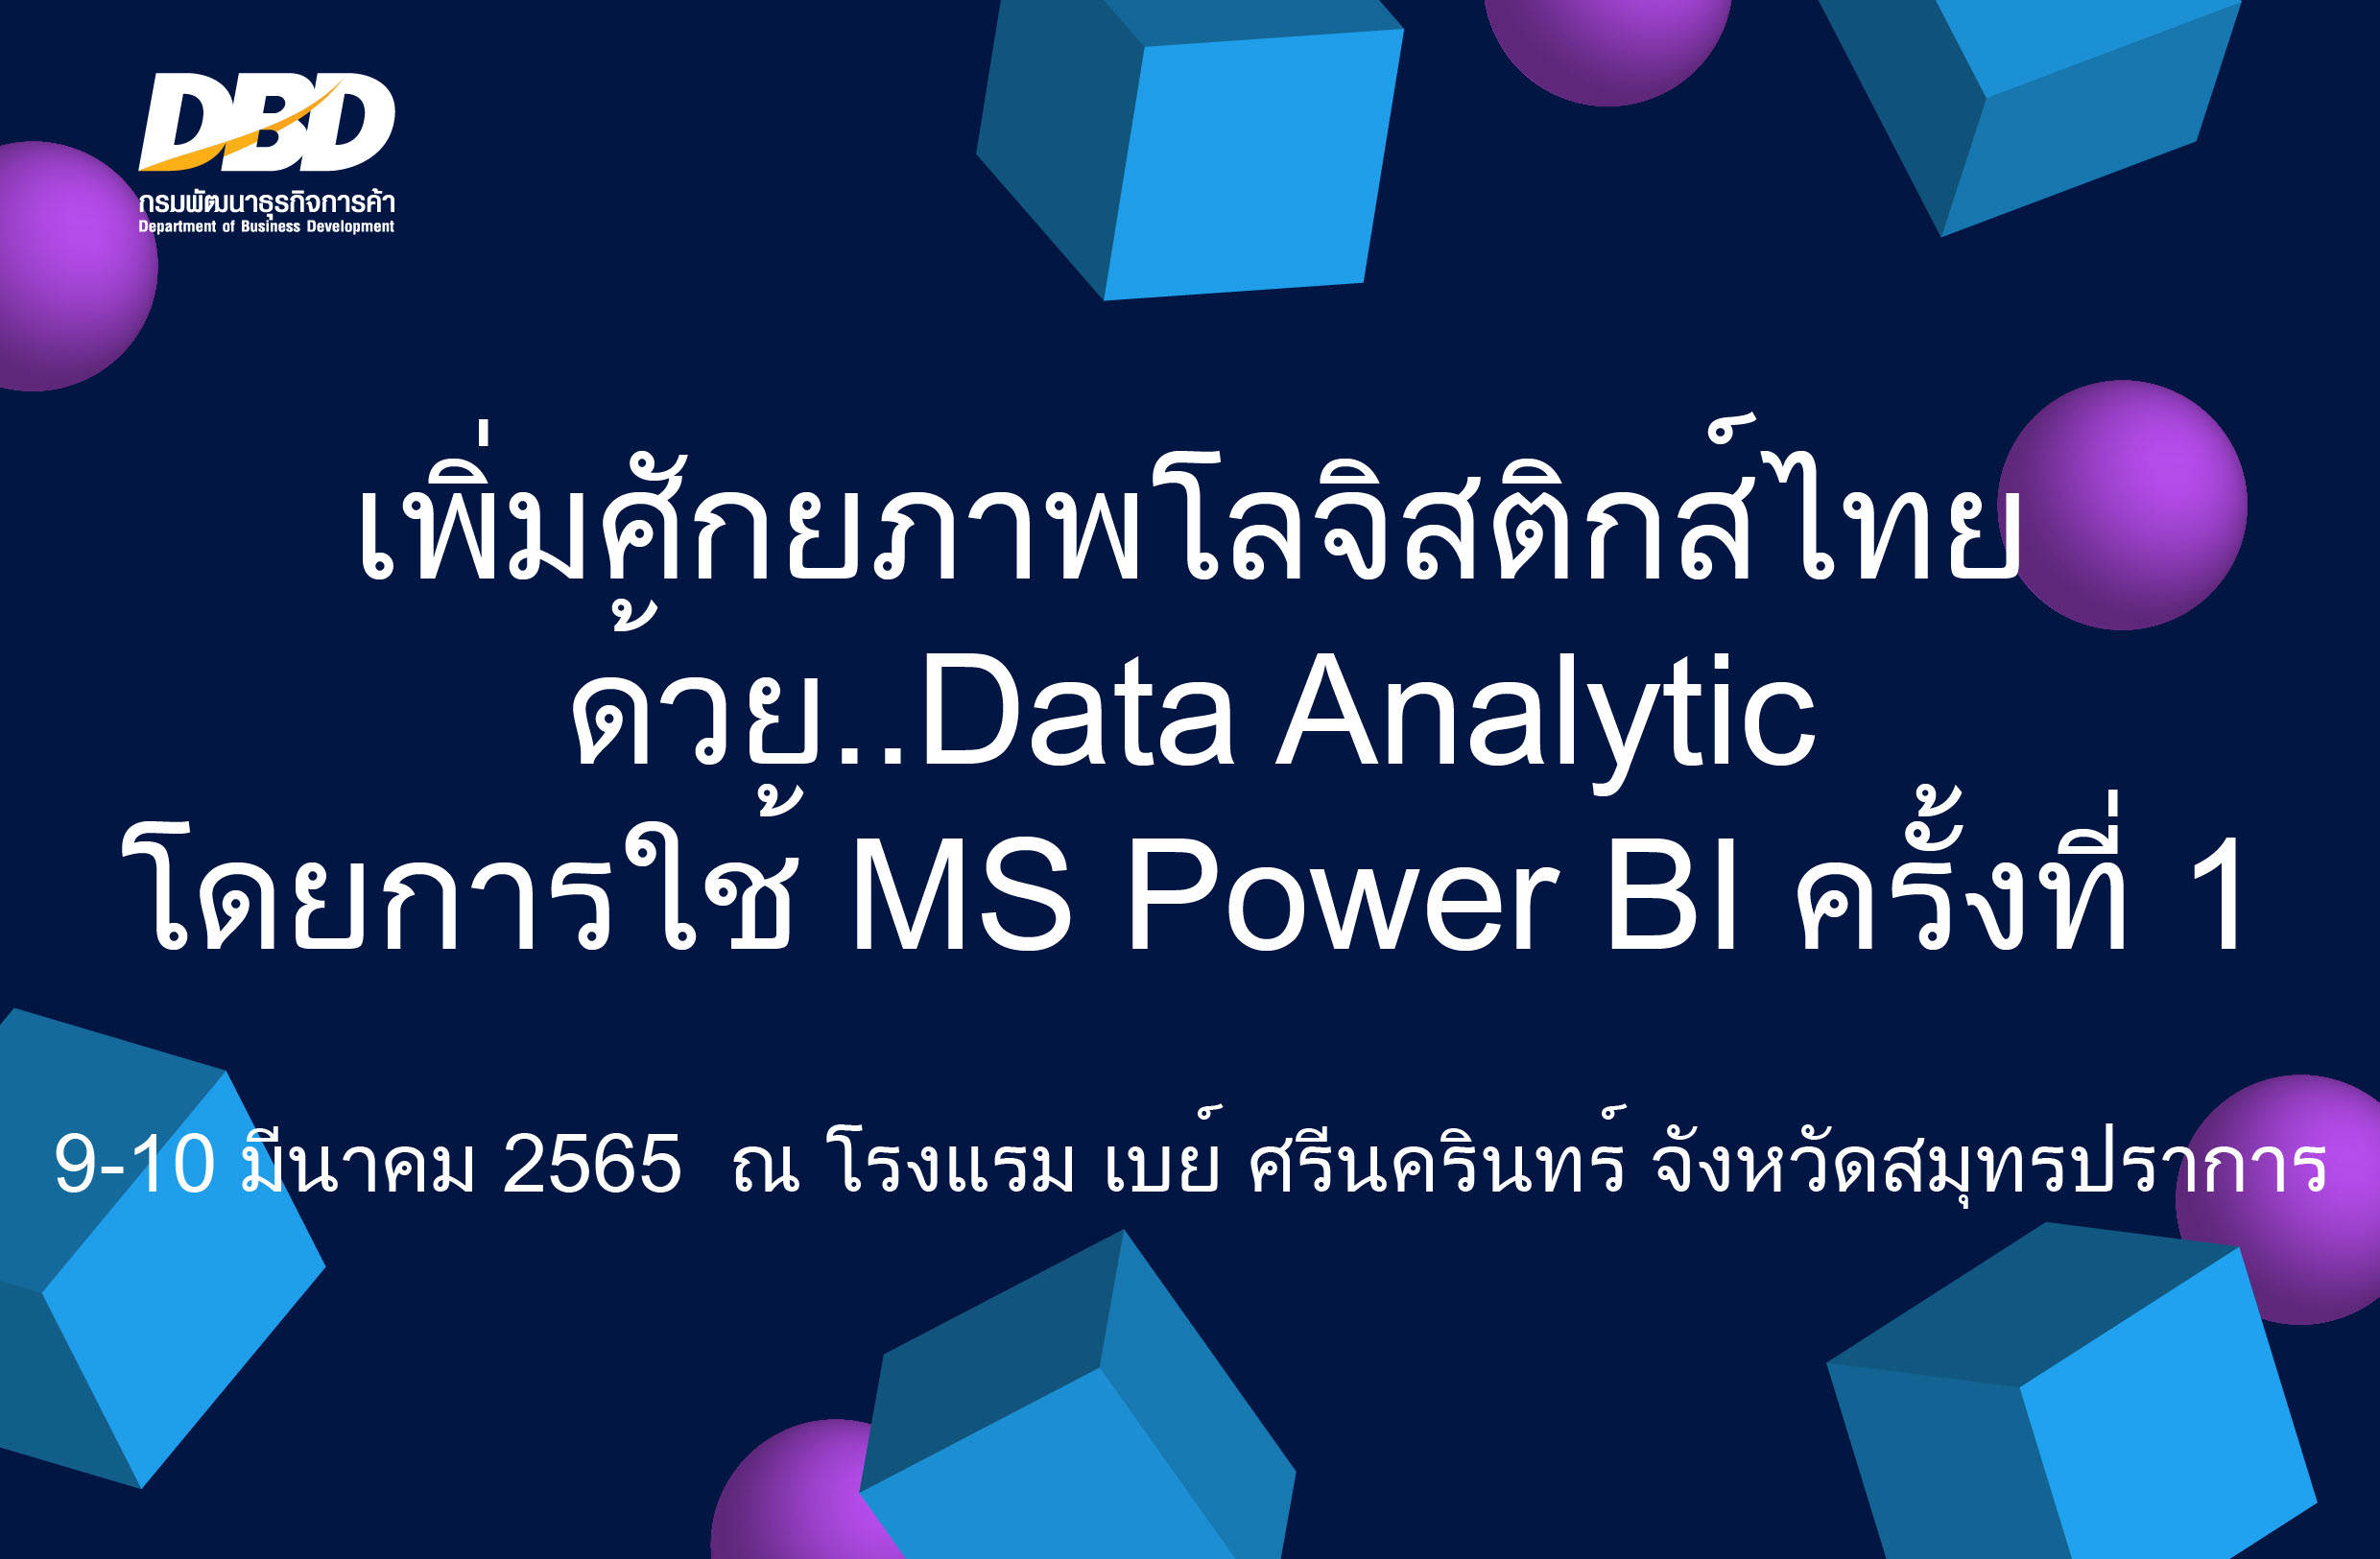 เพิ่มศักยภาพโลจิสติกส์ไทย ด้วย Data Analytic โดยการใช้ MS Power BI